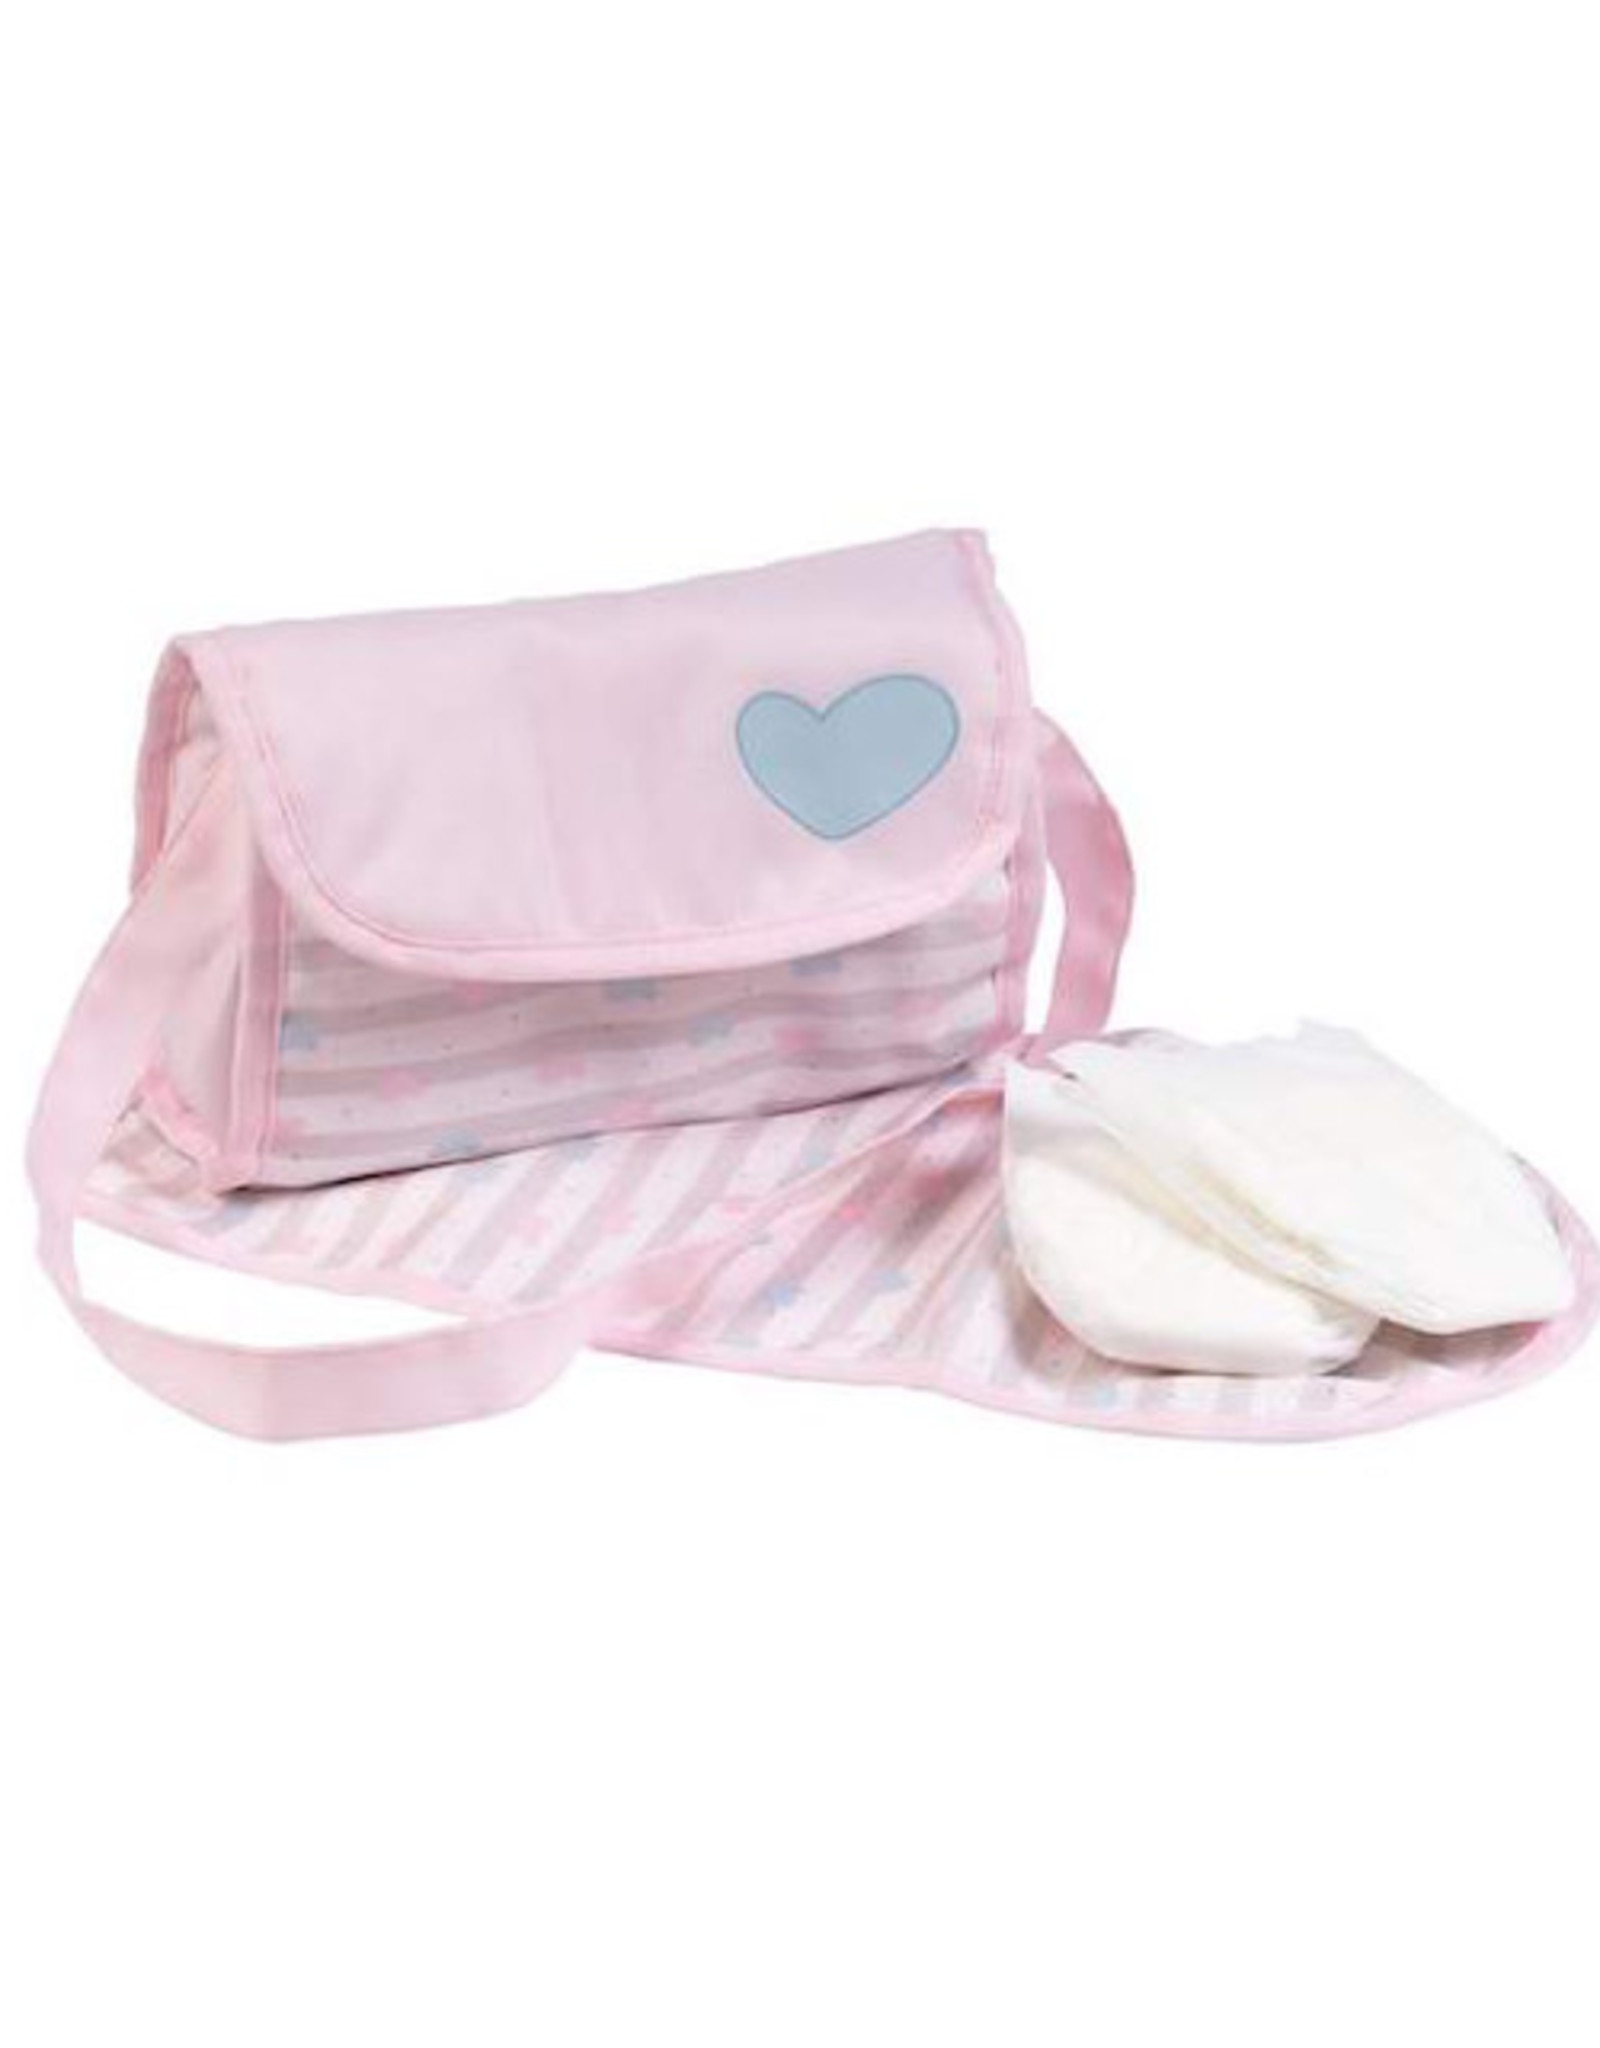 Adora Pastel Pink Diaper Bag